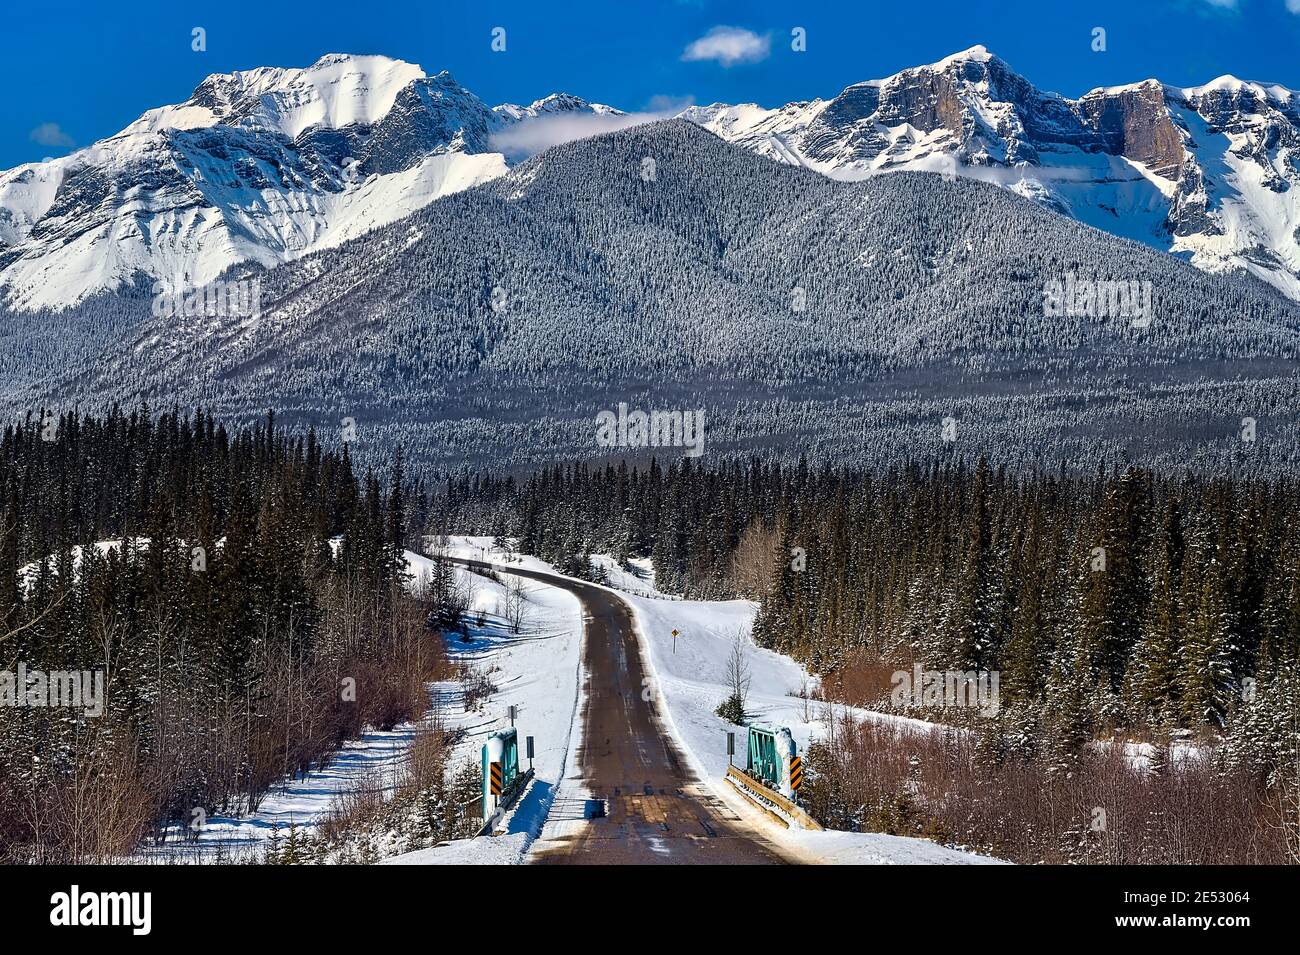 Eine zweispurige Autobahn, die zu den schneebedeckten felsigen Bergen führt In der Stadt Brule im ländlichen Alberta Kanada Stockfoto